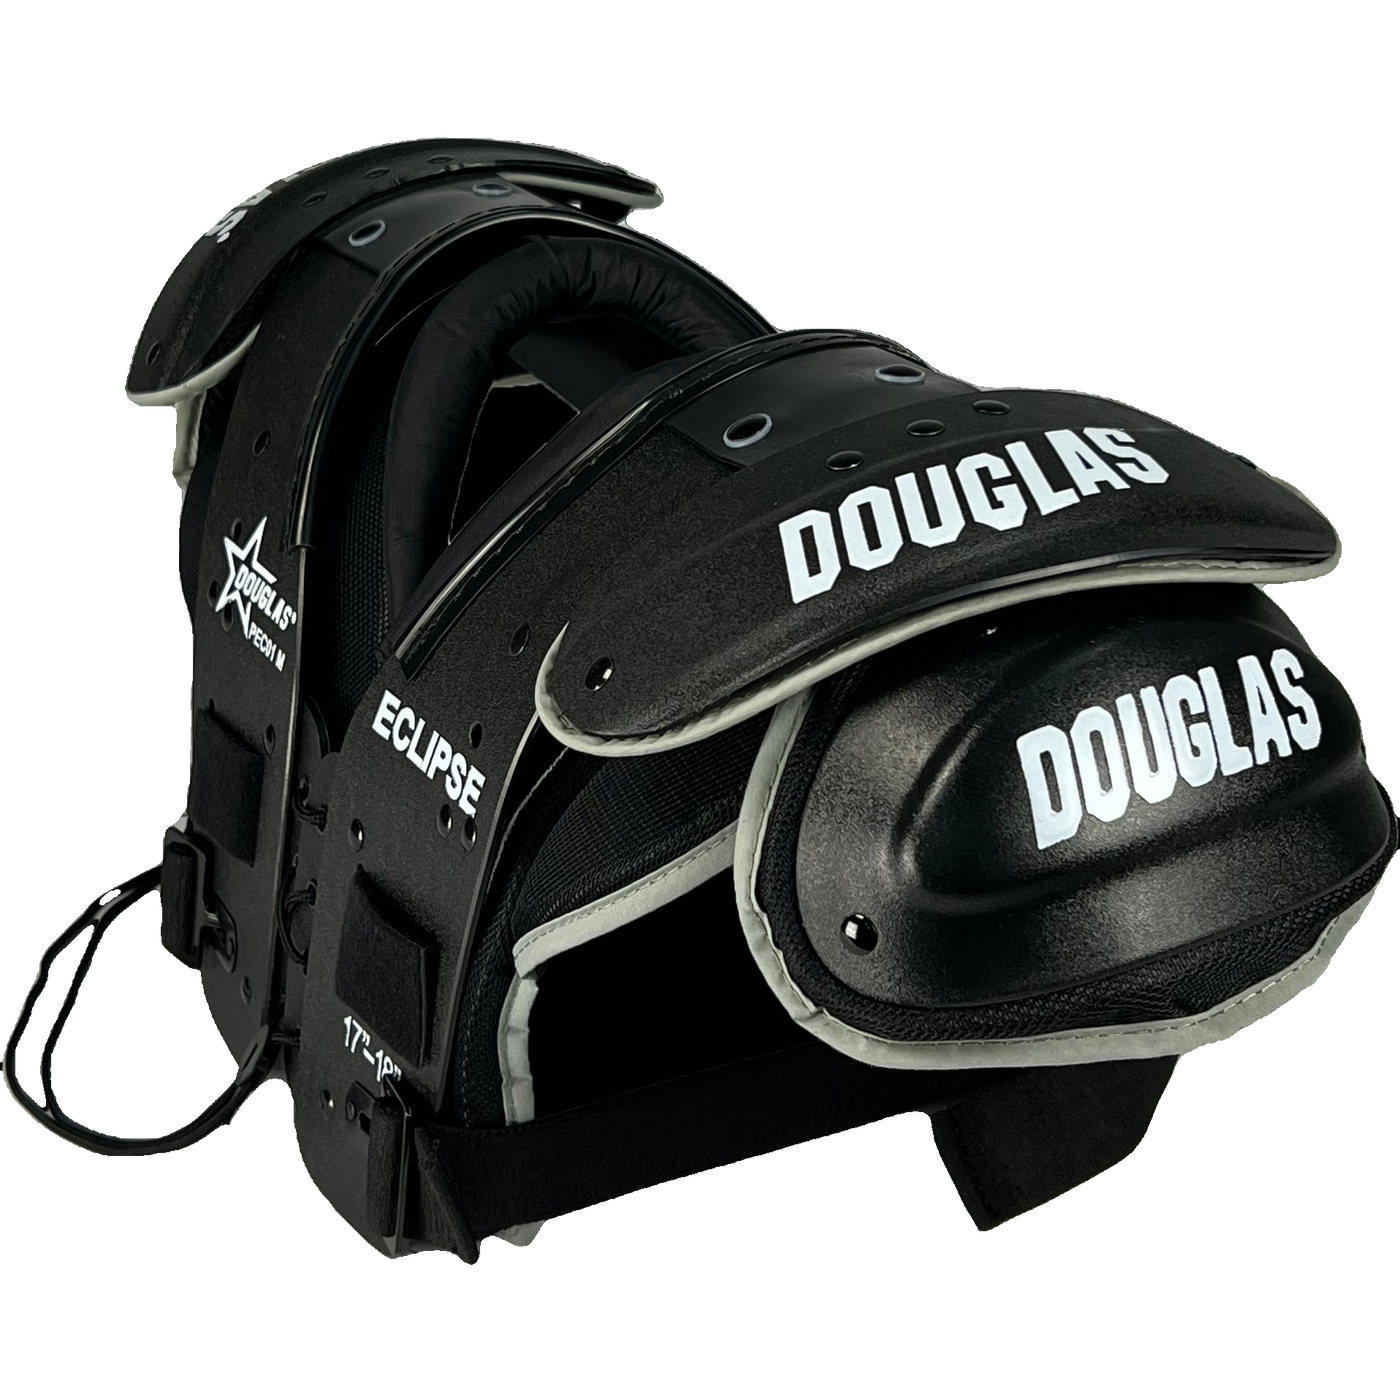 Douglas Eclipse PEC01 Black Edition (AP) - Premium  from Douglas - Shop now at Reyrr Athletics